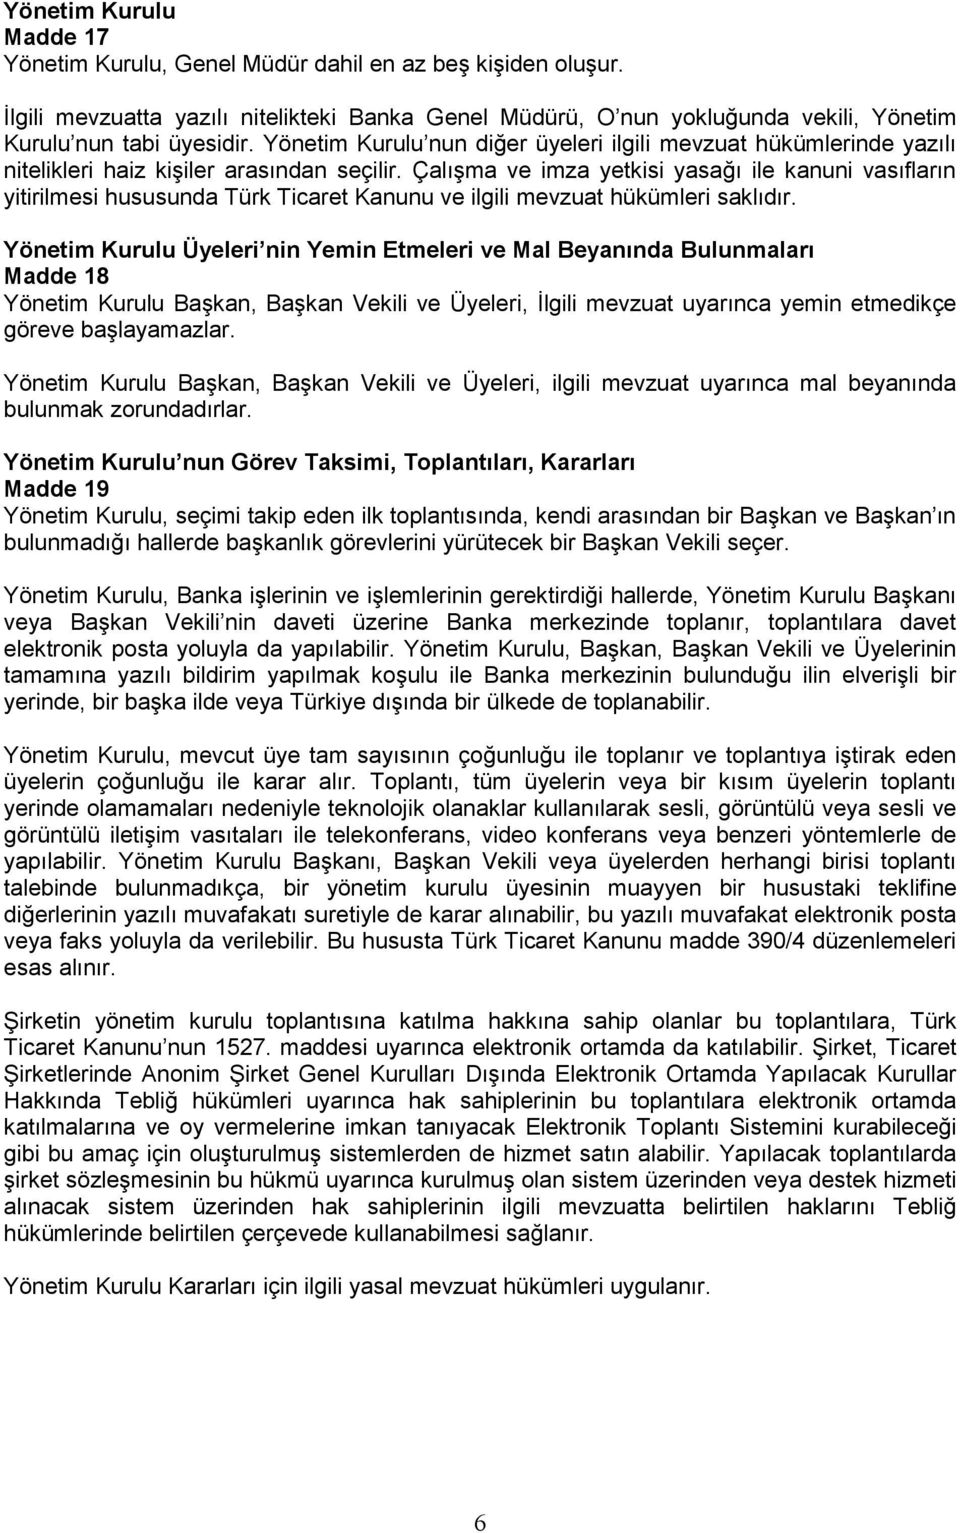 Çalışma ve imza yetkisi yasağı ile kanuni vasıfların yitirilmesi hususunda Türk Ticaret Kanunu ve ilgili mevzuat hükümleri saklıdır.